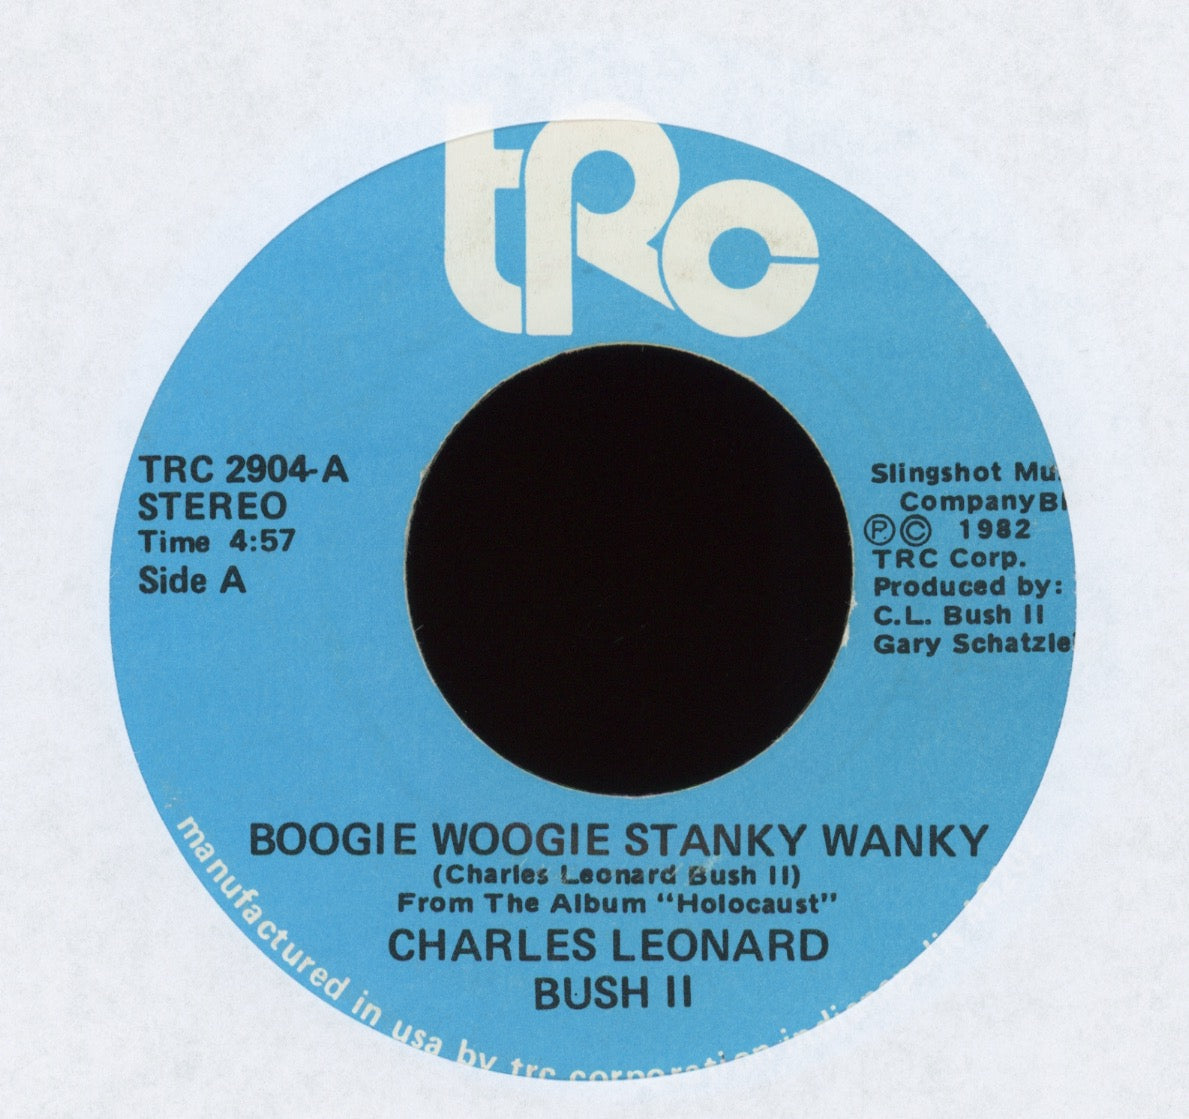 Charles Leonard Bush II - Boogie Woogie Stanky Wanky on TRC